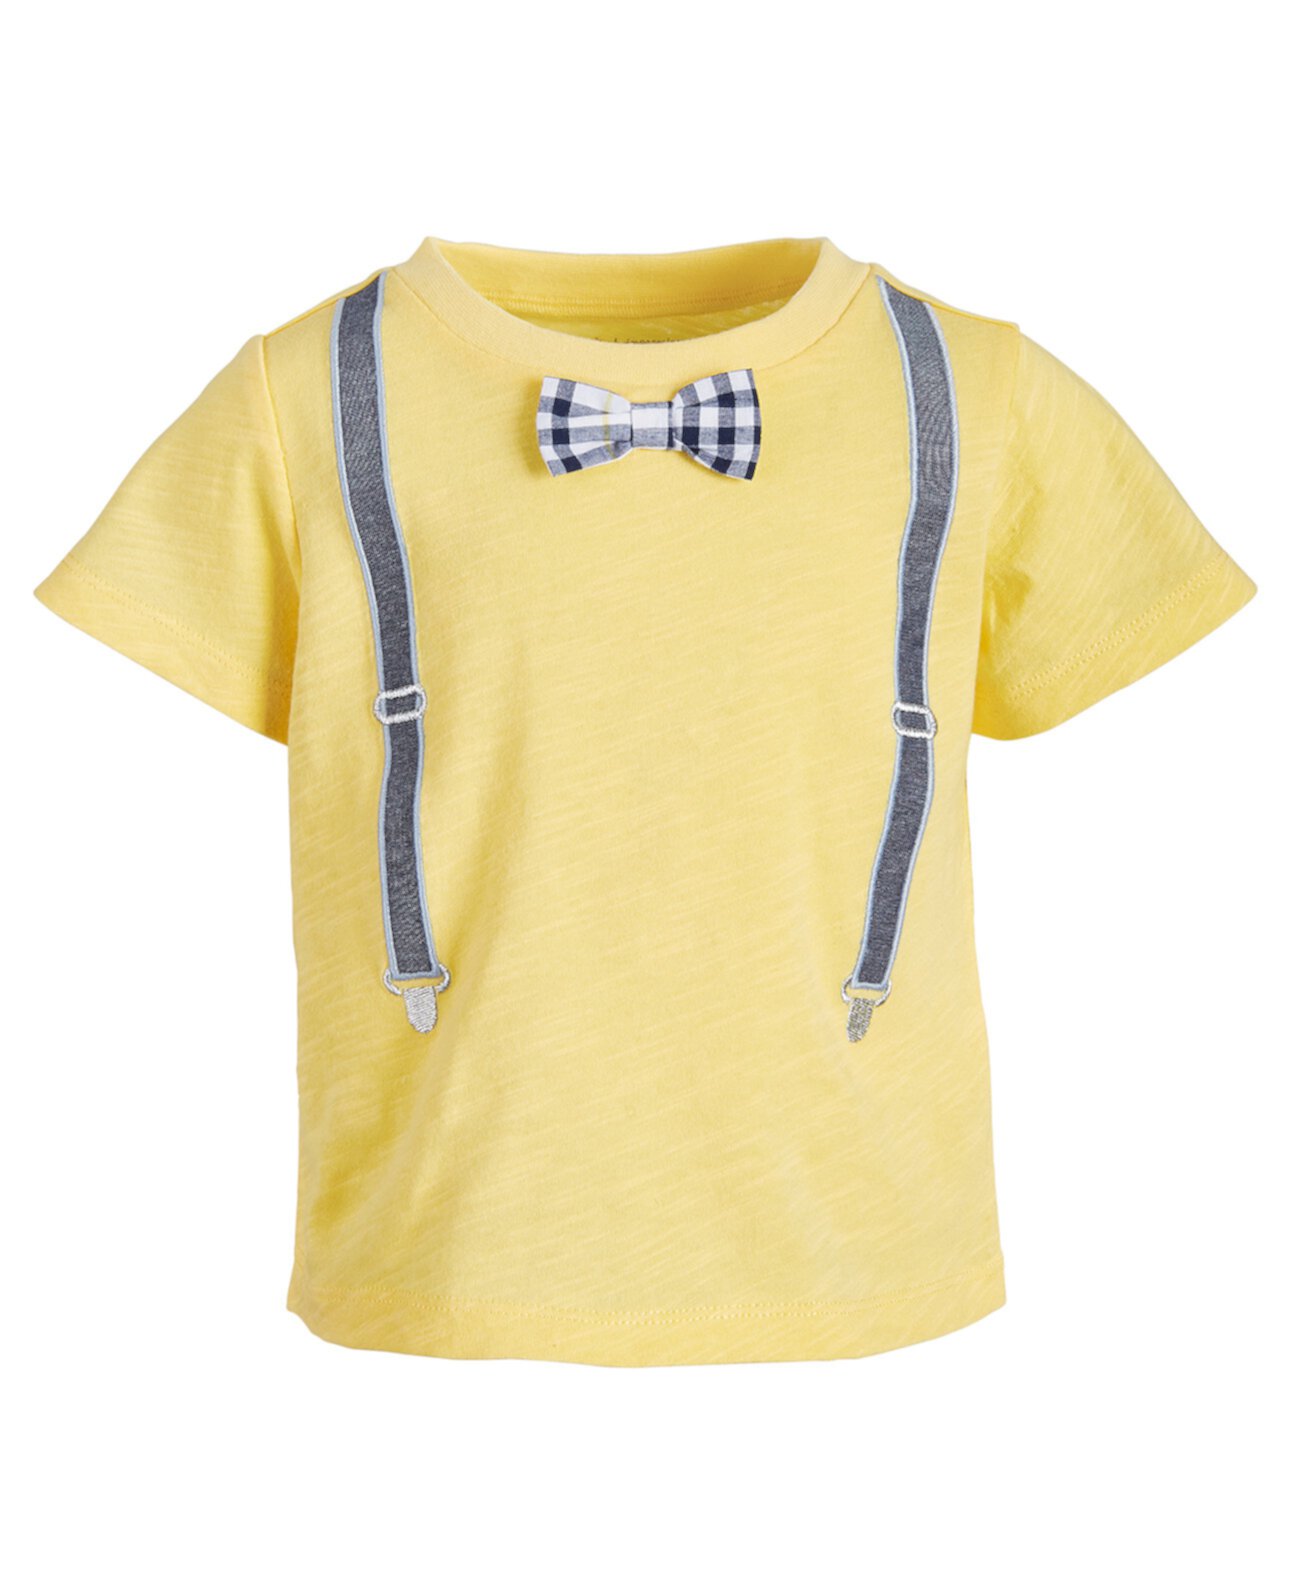 Хлопковая футболка с подтяжками для малышей, созданная для Macy's First Impressions